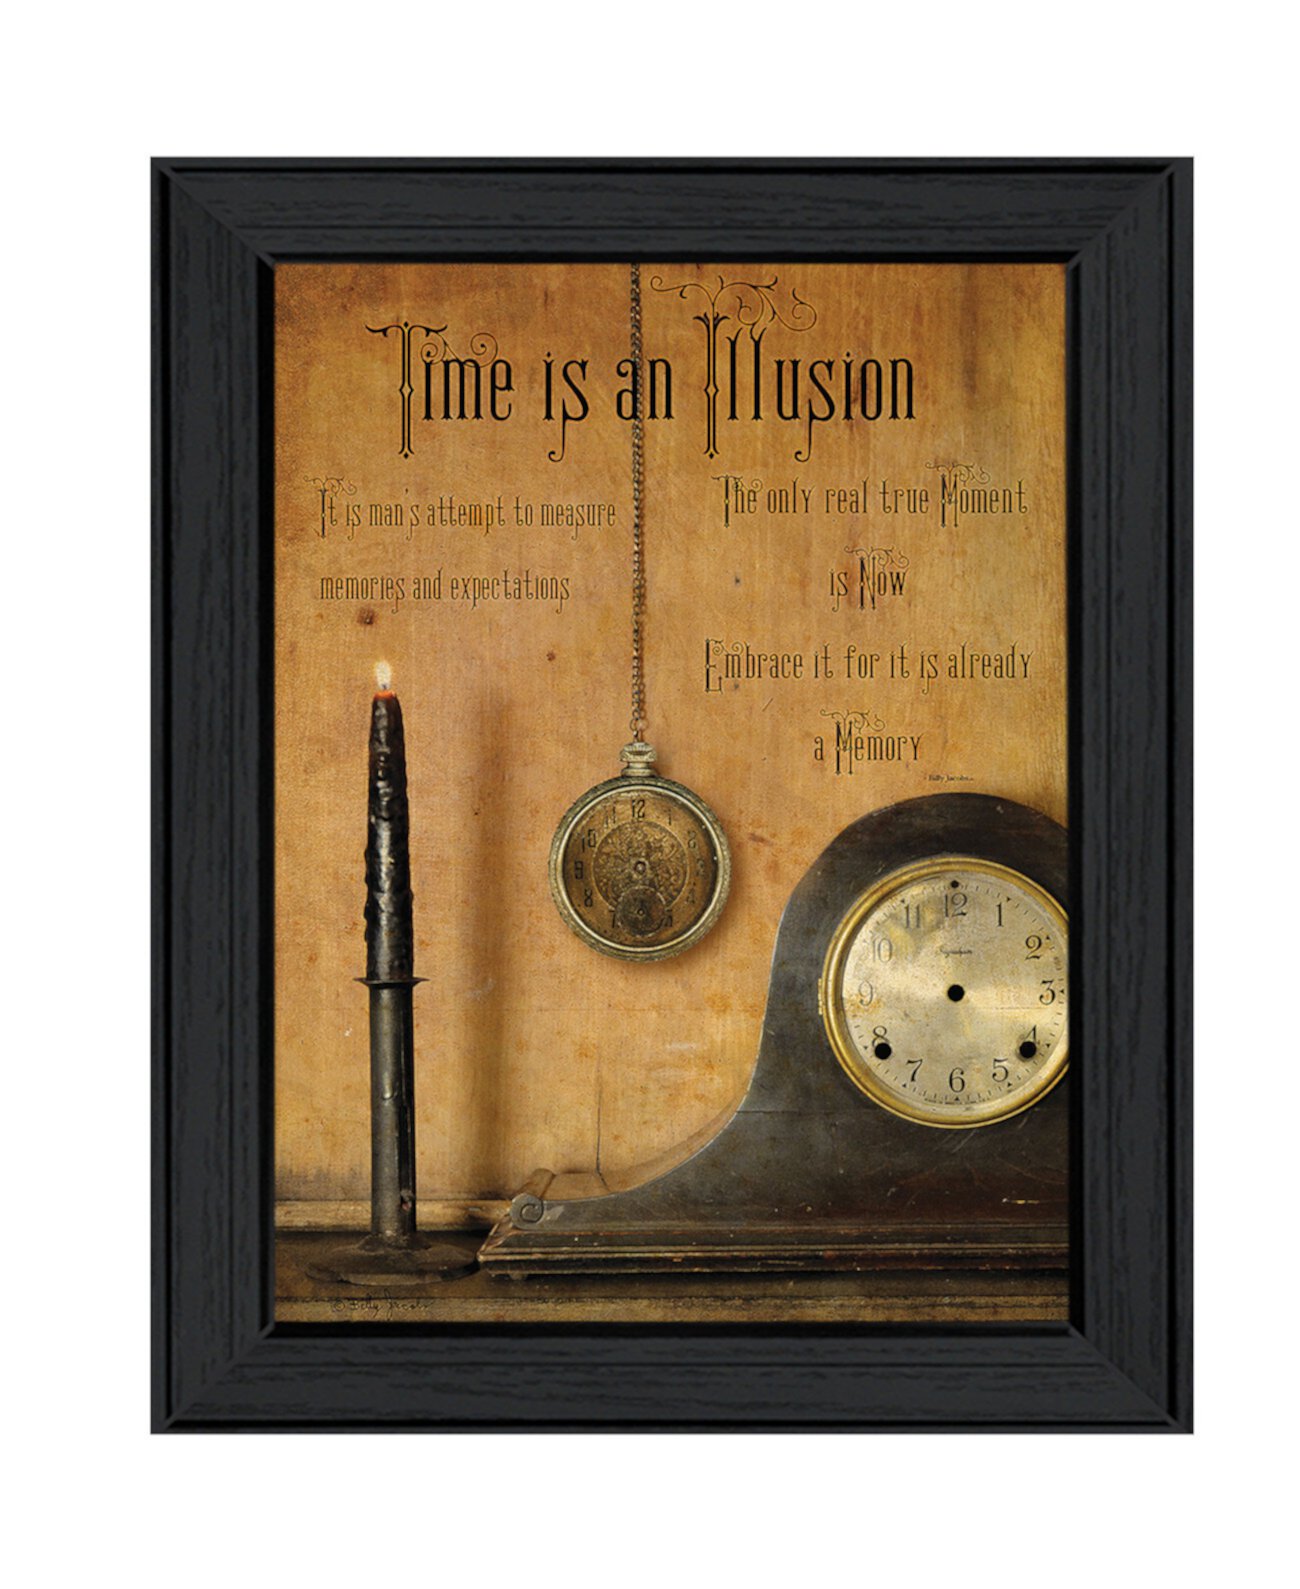 Время - иллюзия Билли Джейкобса, настенное искусство с принтом, готово к развешиванию, черная рамка, 19 "x 15" Trendy Décor 4U